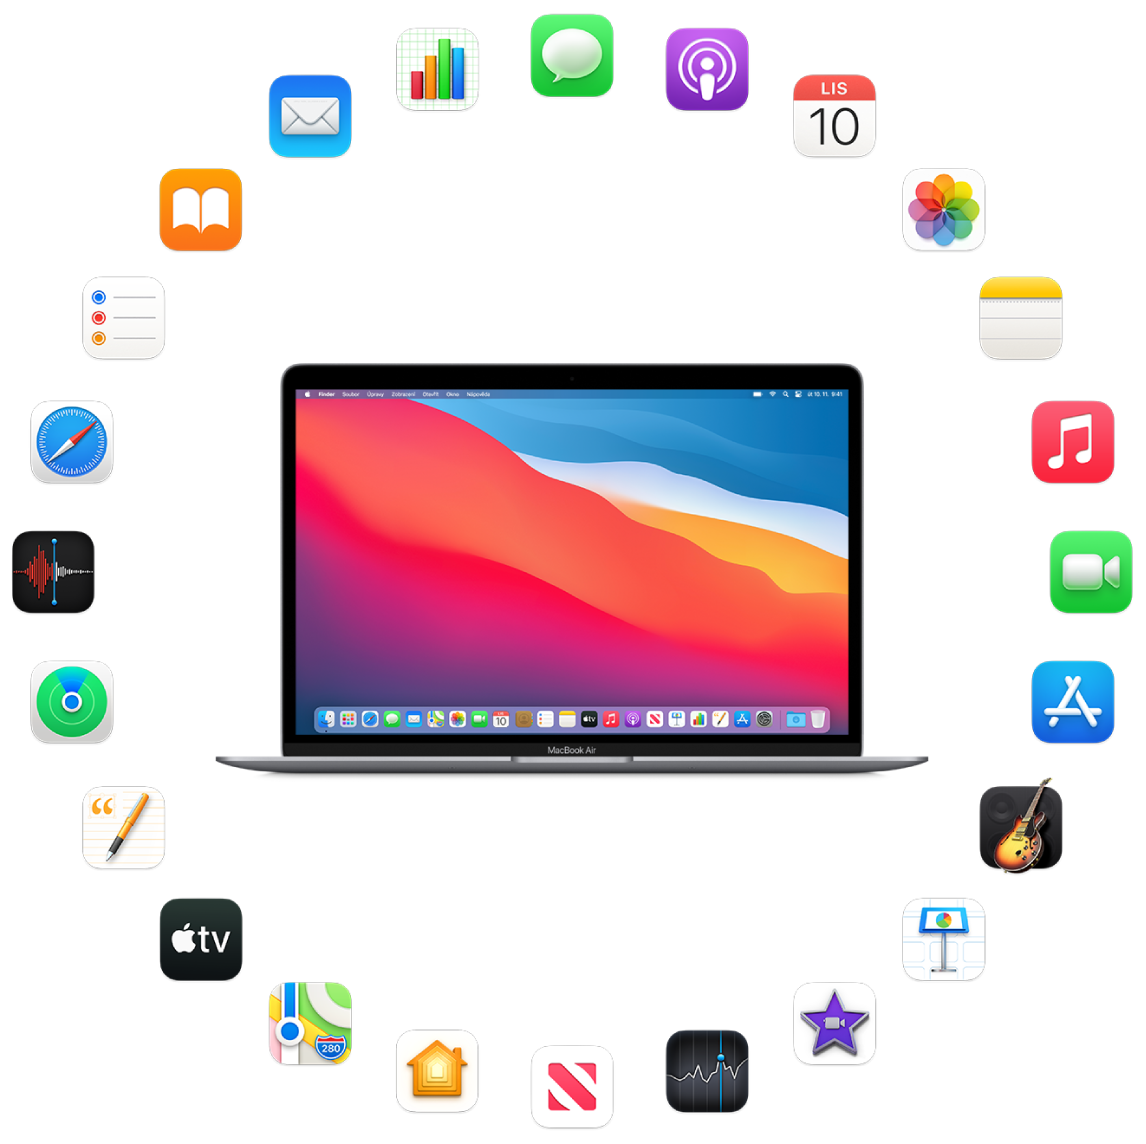 MacBook Air obklopený ikonami předinstalovaných aplikací, které jsou popsány v následujících oddílech